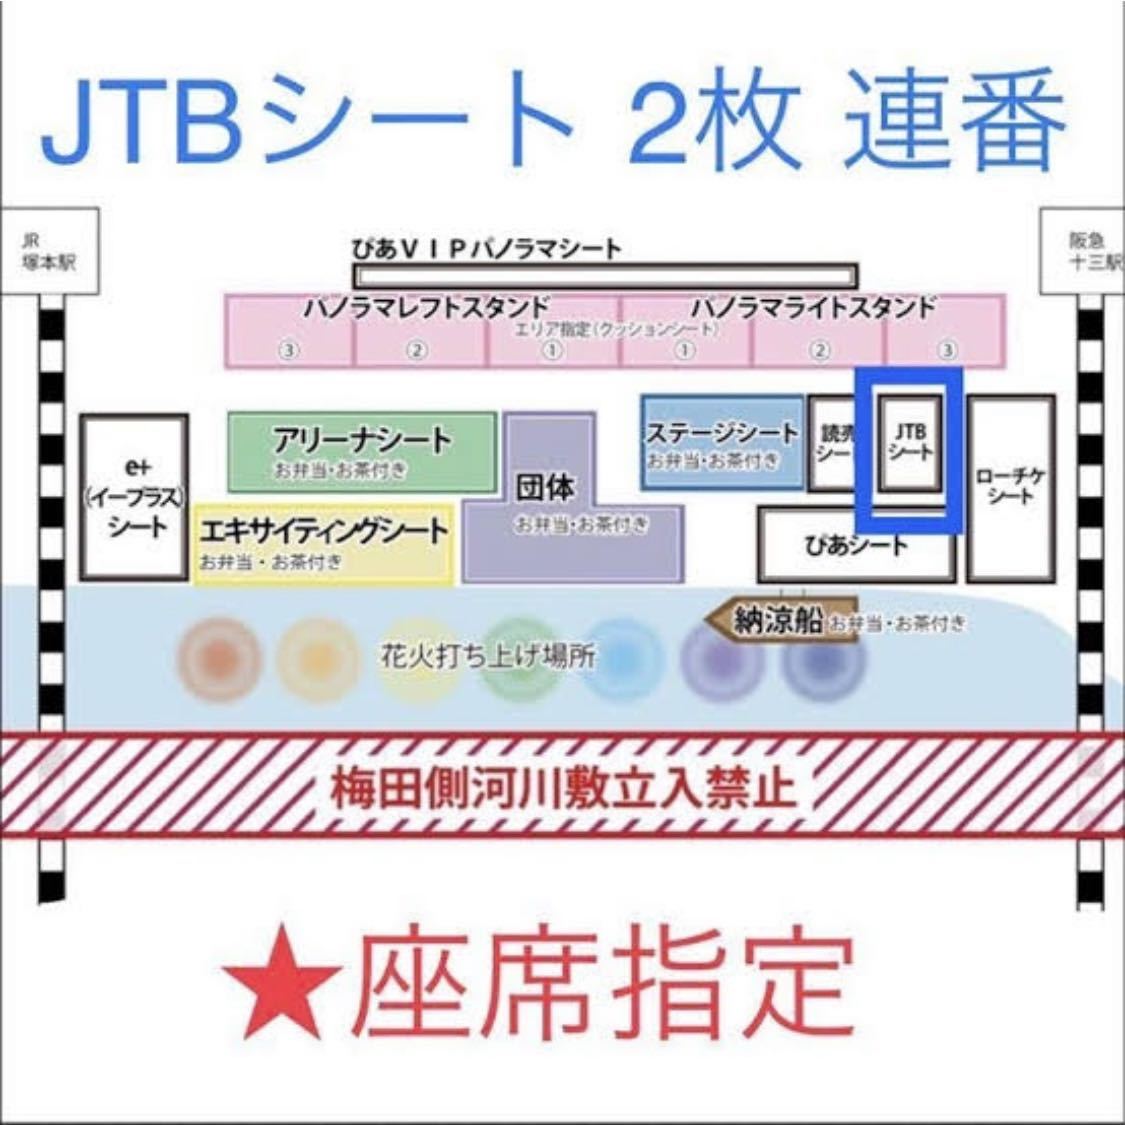 なにわ淀川花火大会 チケット JTBシート 2連 その他 | inaudit.io